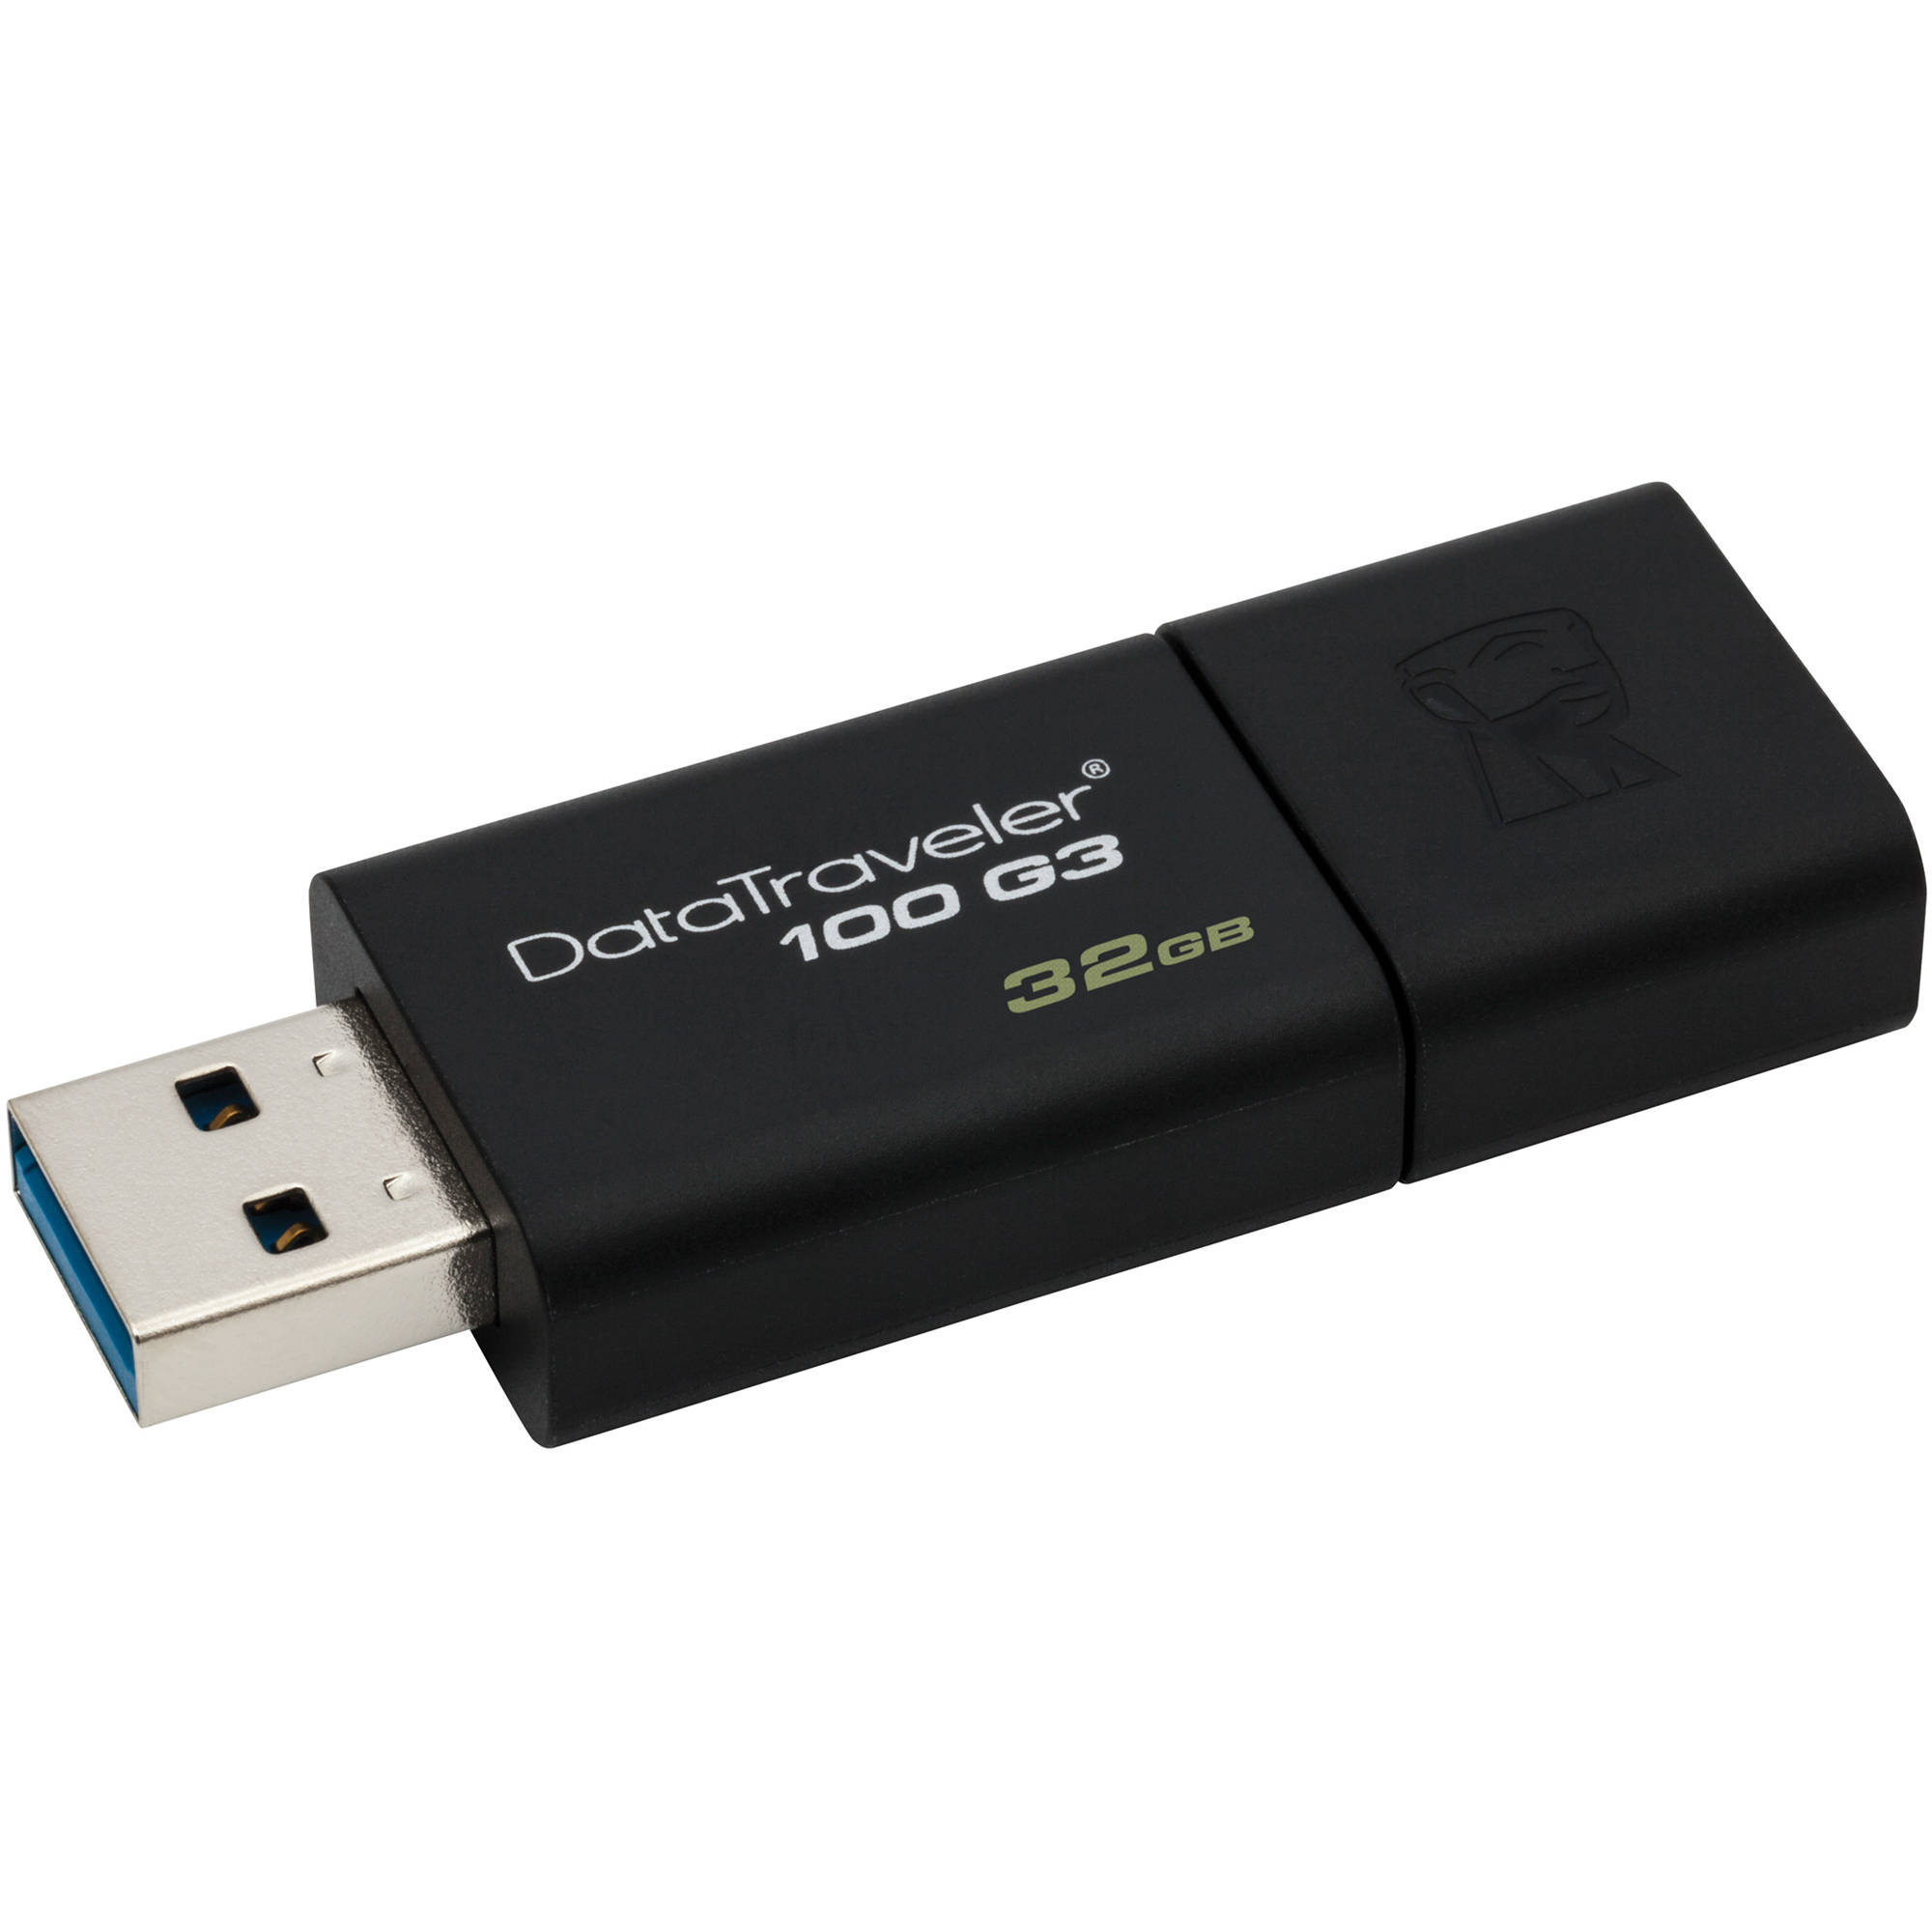 Flash DRIVE USB 32Gb DT100G3 (Kingston) USB 3.0